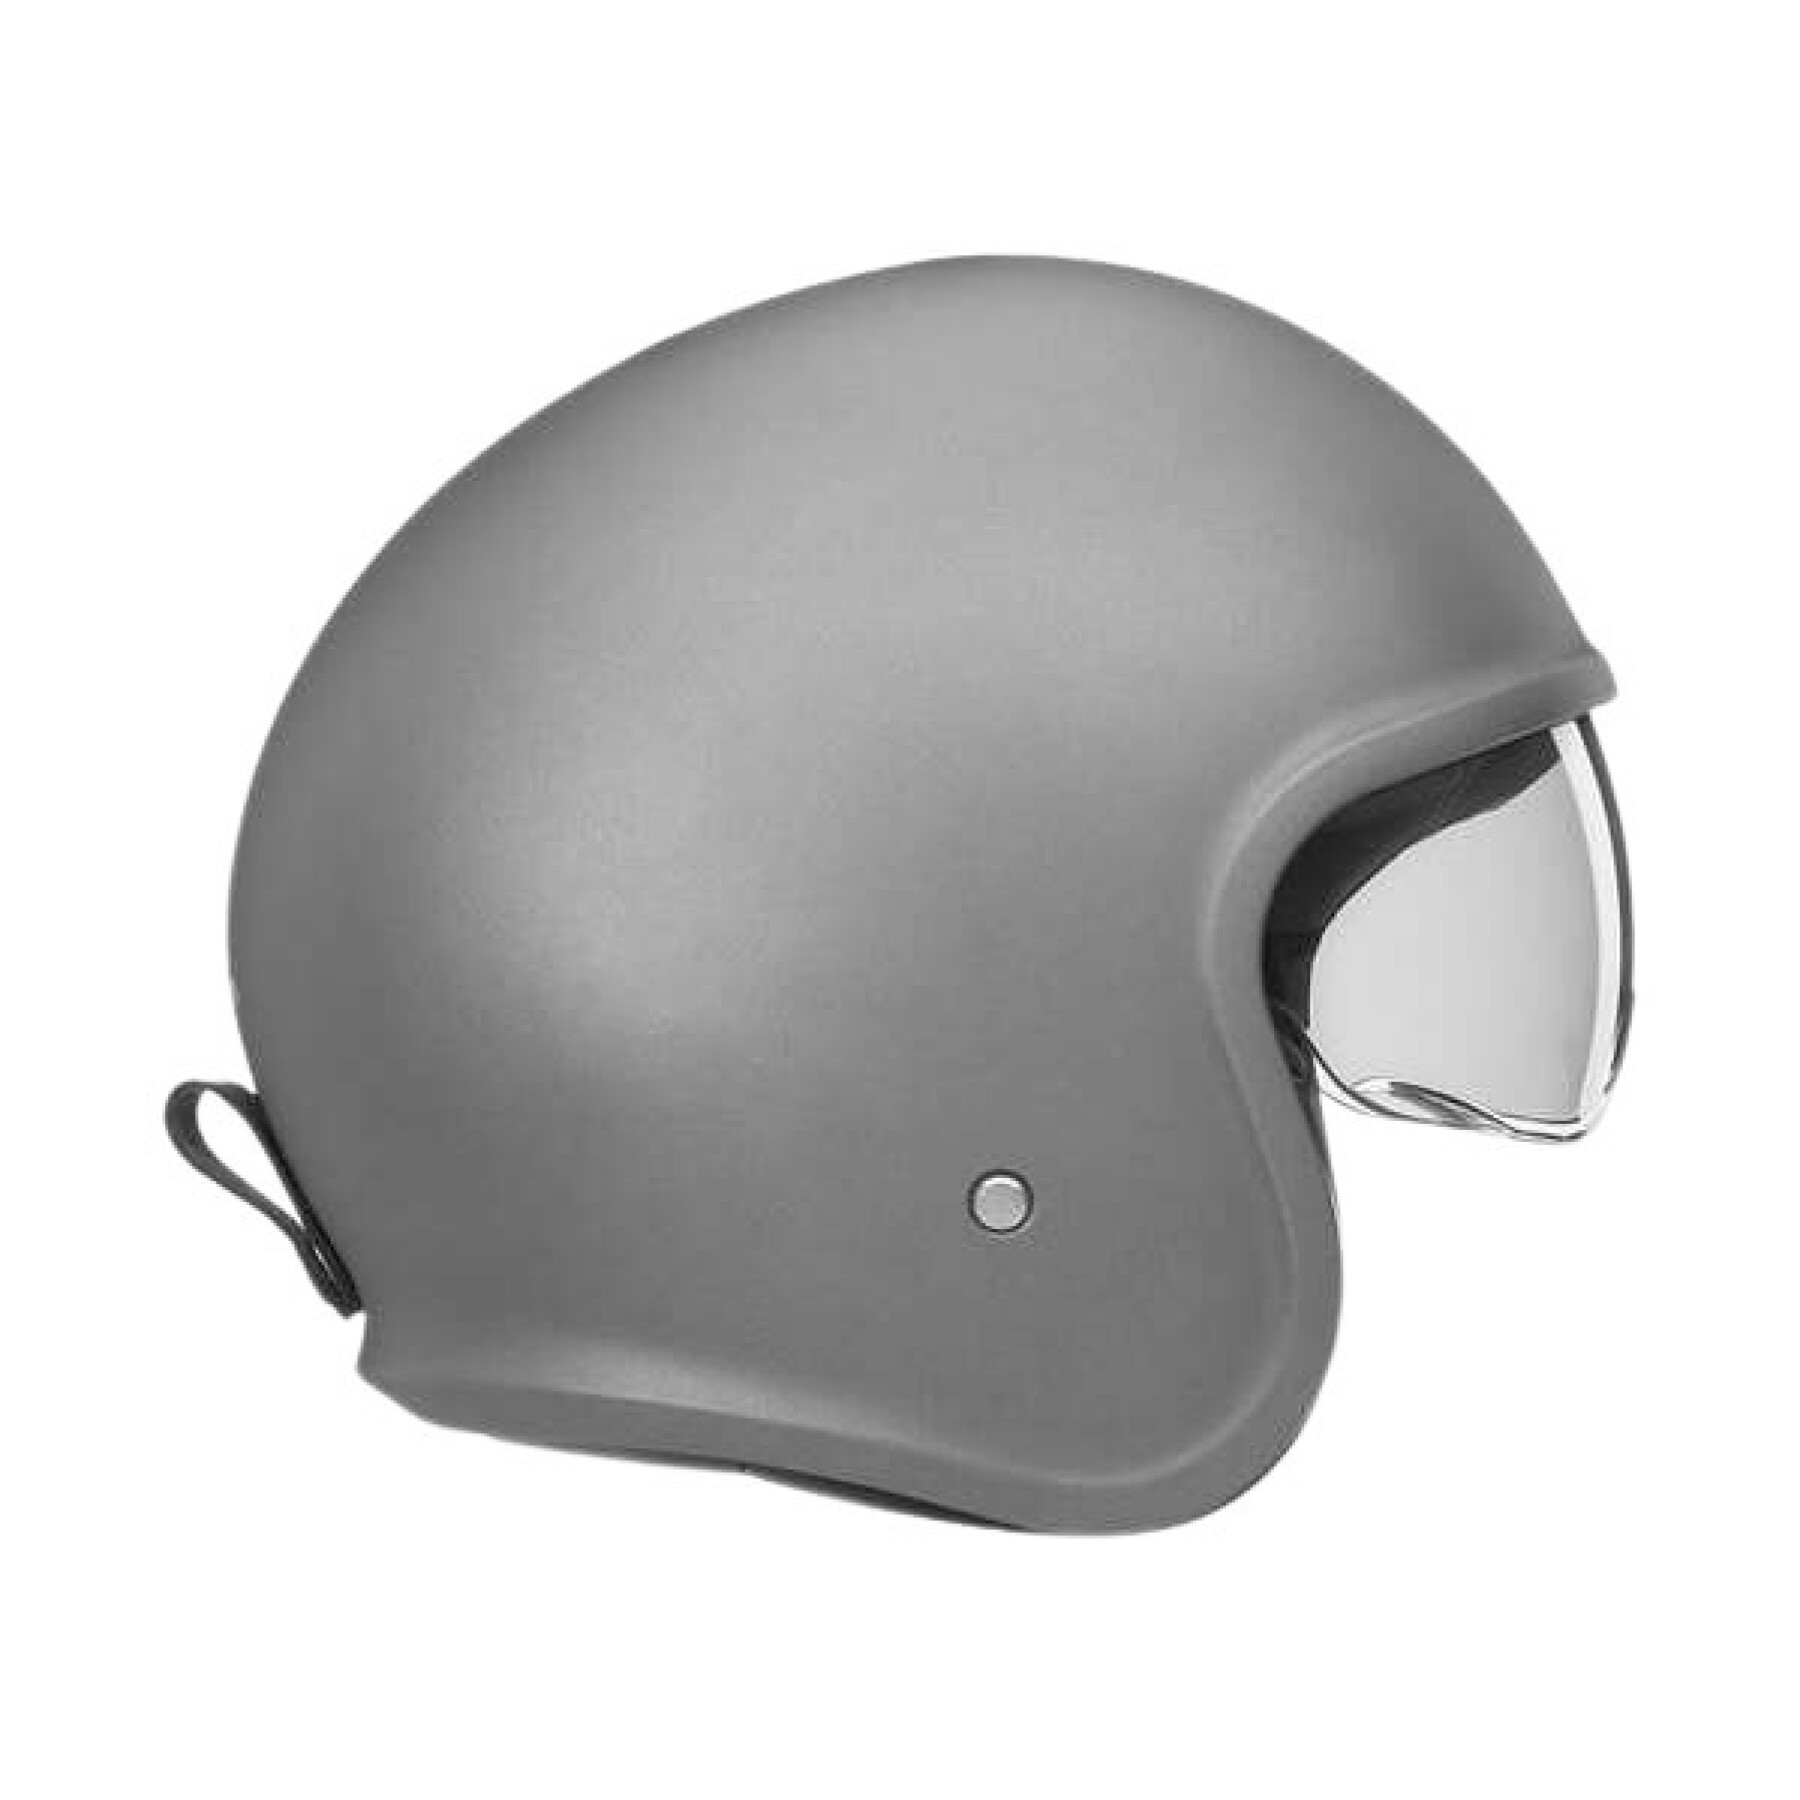 Jet motorcycle helmet Nox Next